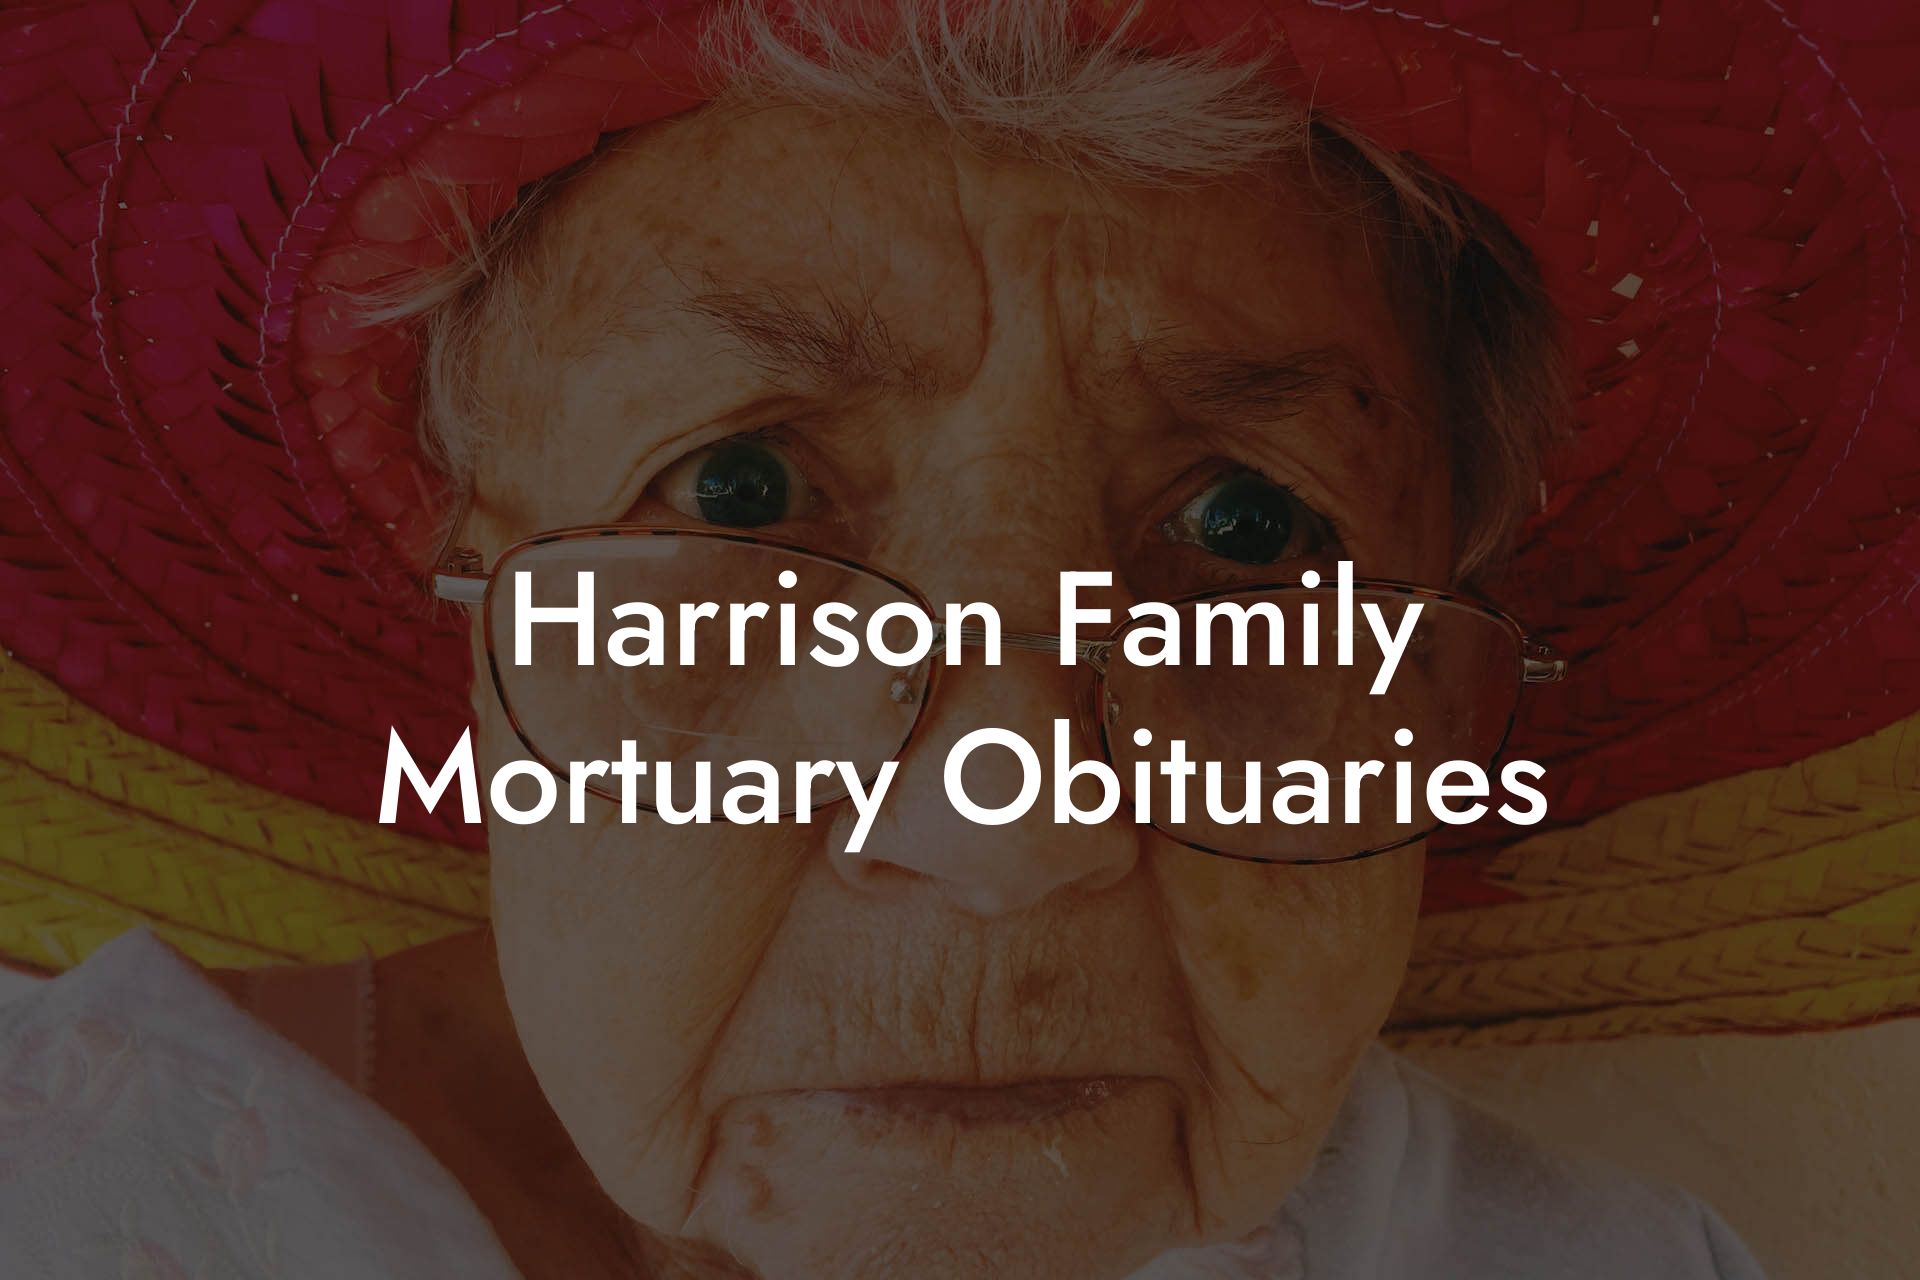 Harrison Family Mortuary Obituaries